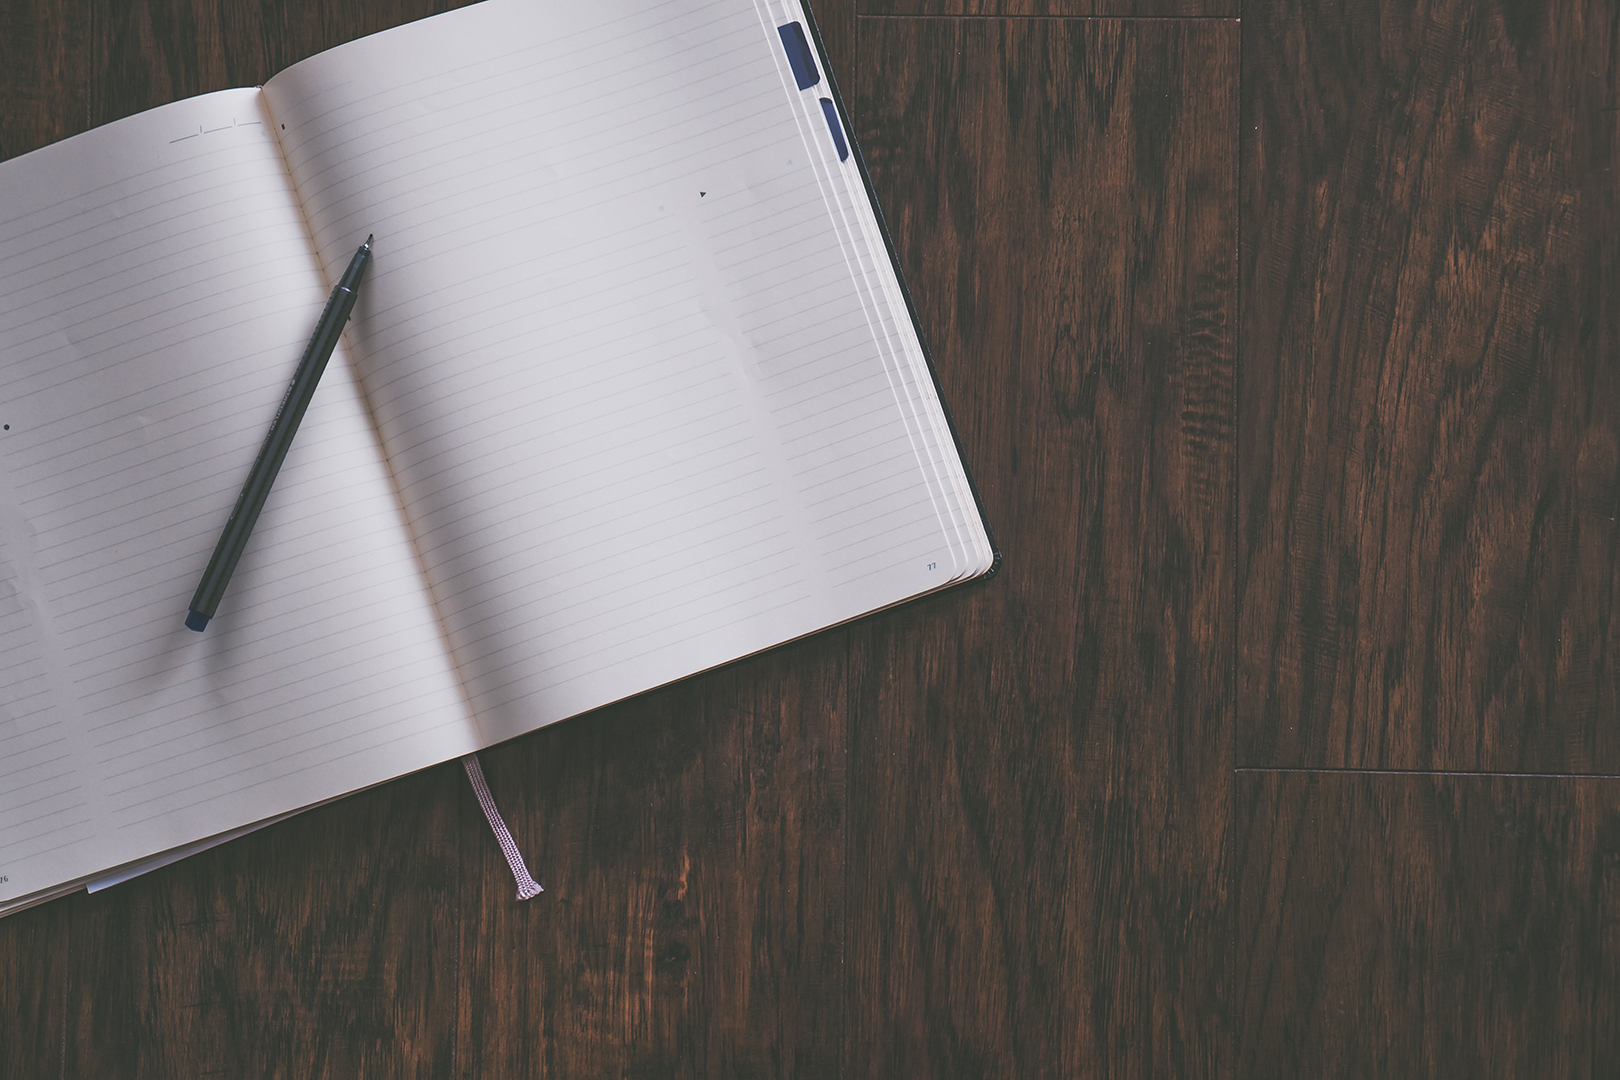 Das Schreiben eines Dankbarkeits Tagebuch  als neue Gewohnheit fördert Resilienz und Zufriedenheit